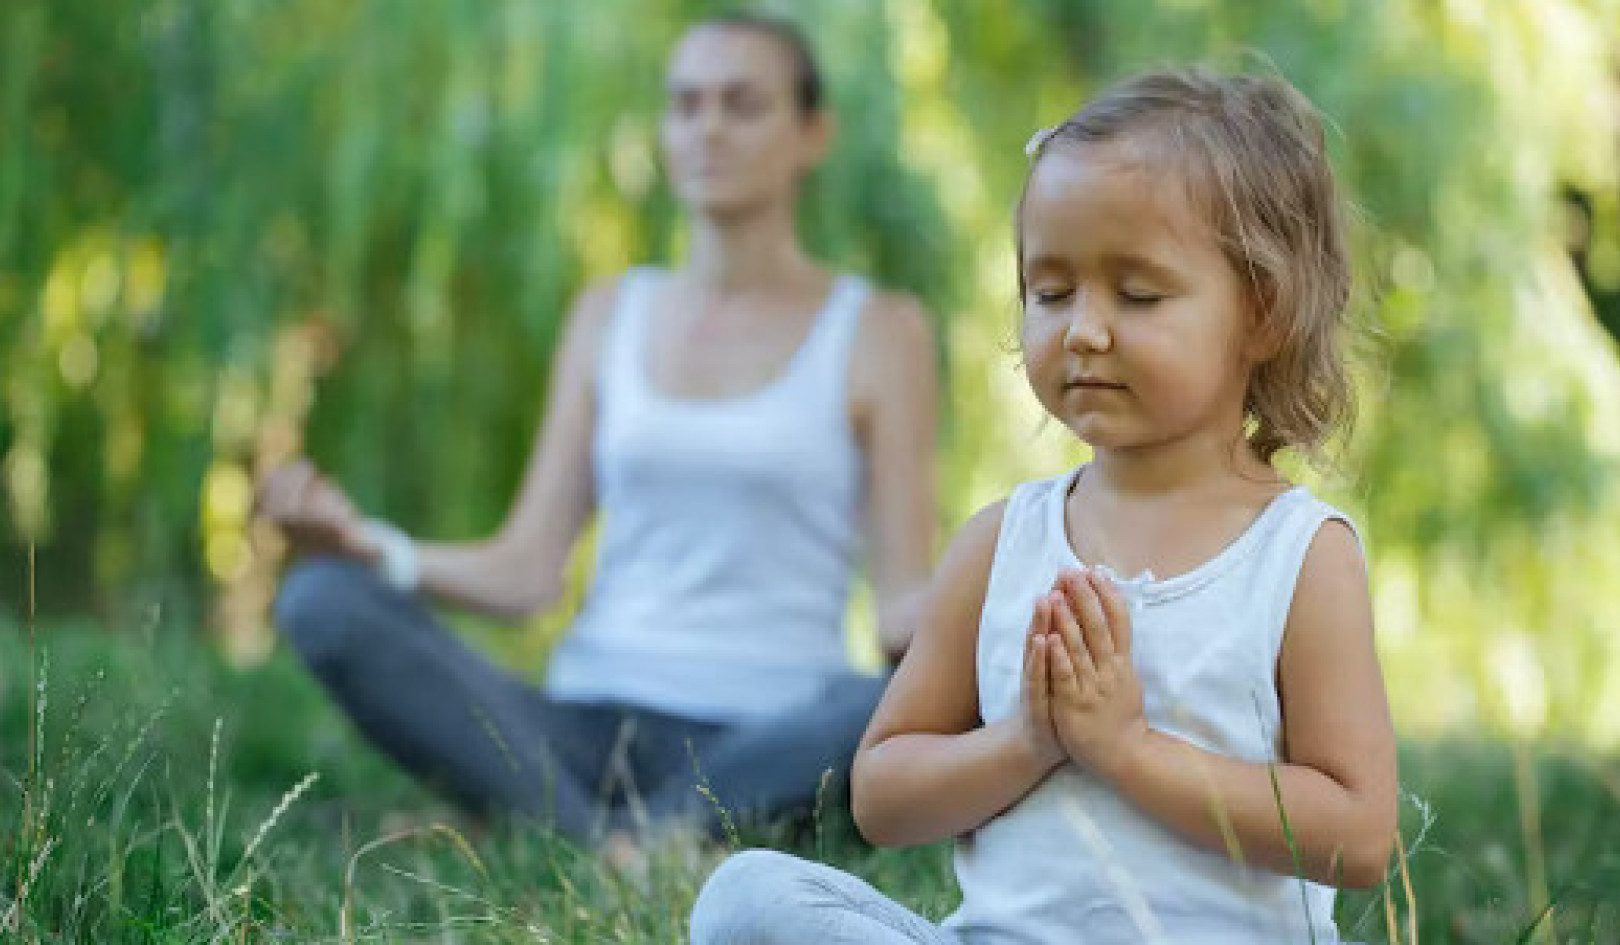 Meditation har potentiale til at behandle børn, der lider af traumer, vanskelige diagnoser eller stress